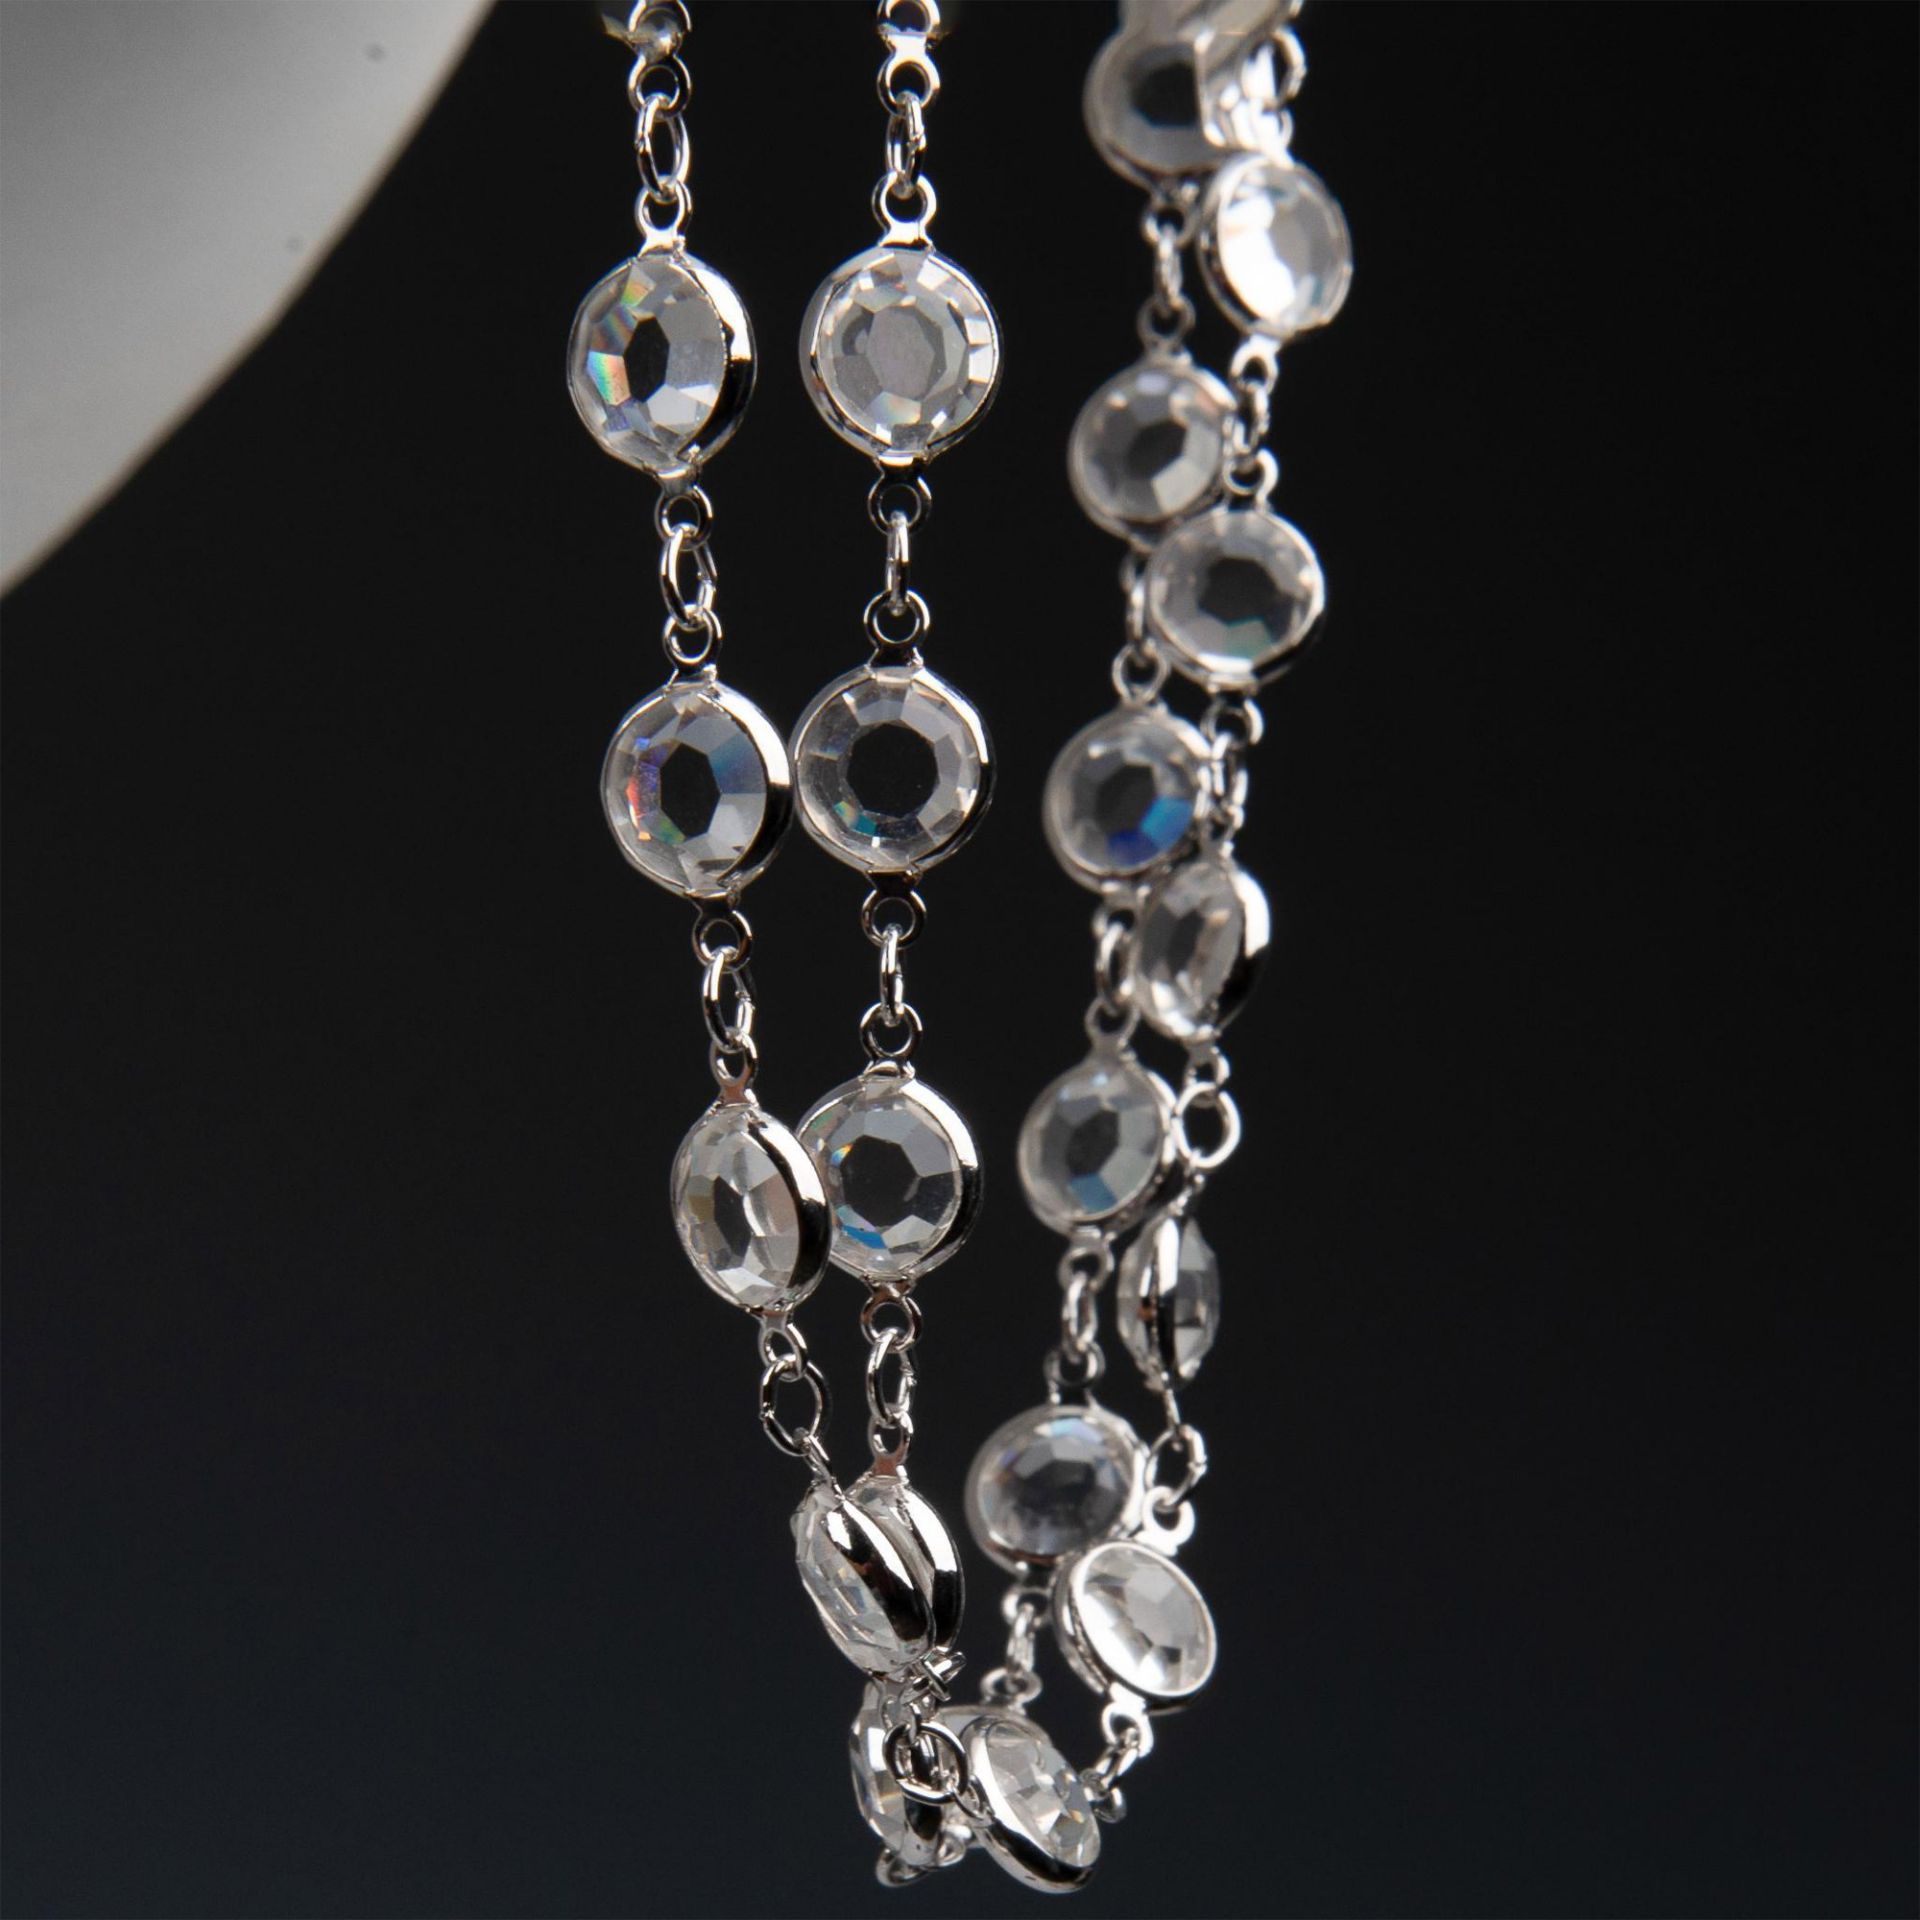 2pc Swarovski Crystal Necklace & Bracelet Set - Image 5 of 7